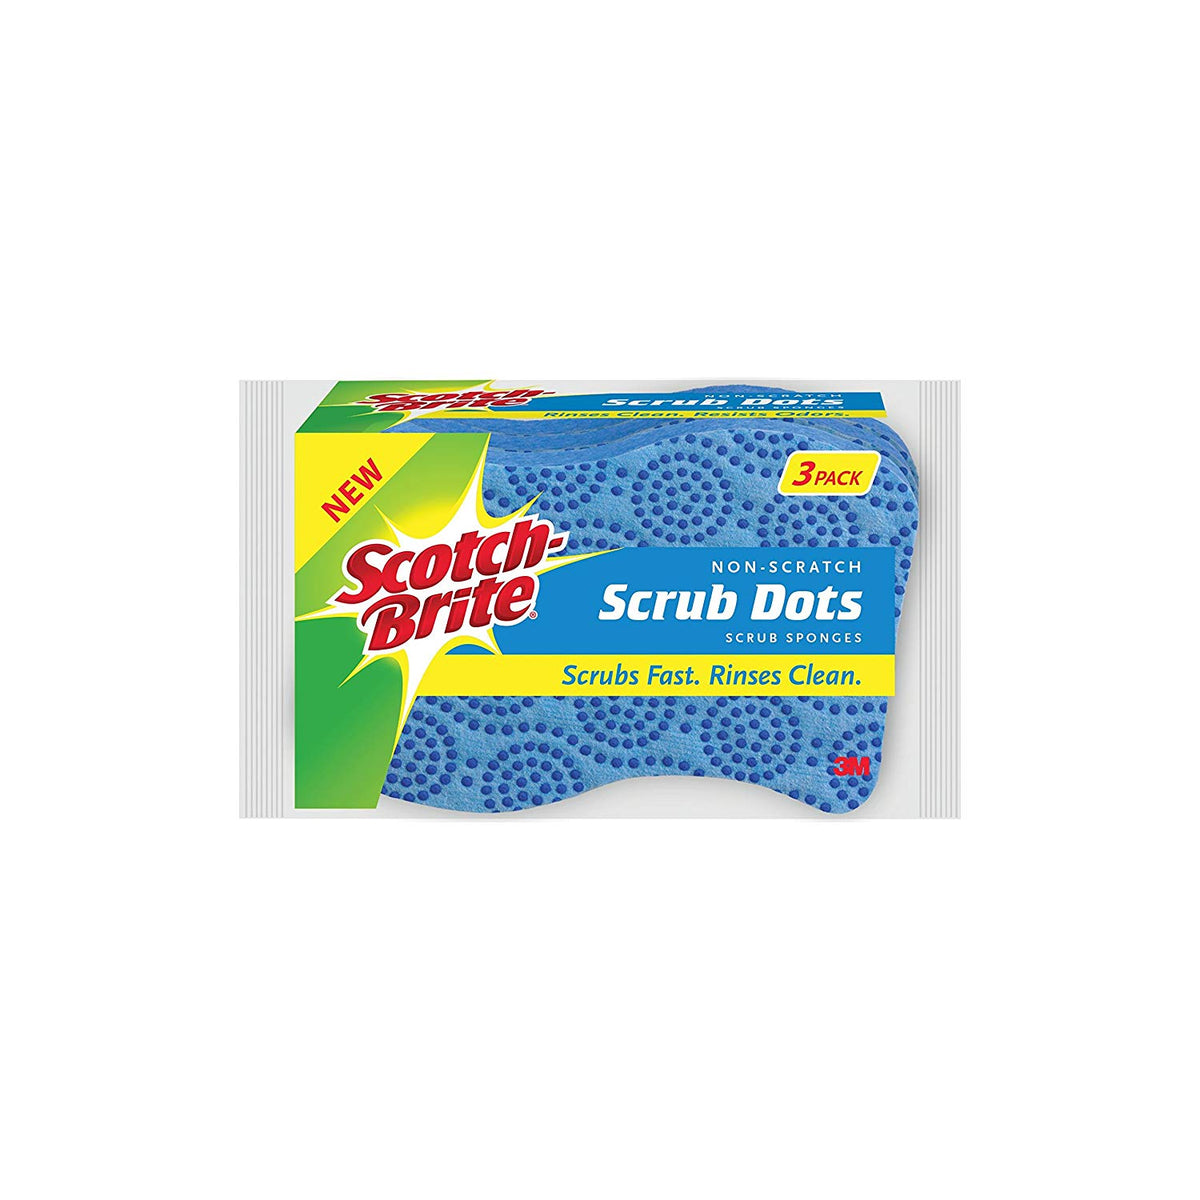 Scotch-Brite 20303-8 Scrub Dots Non-Scratch Scrub Sponge, 3-Pack